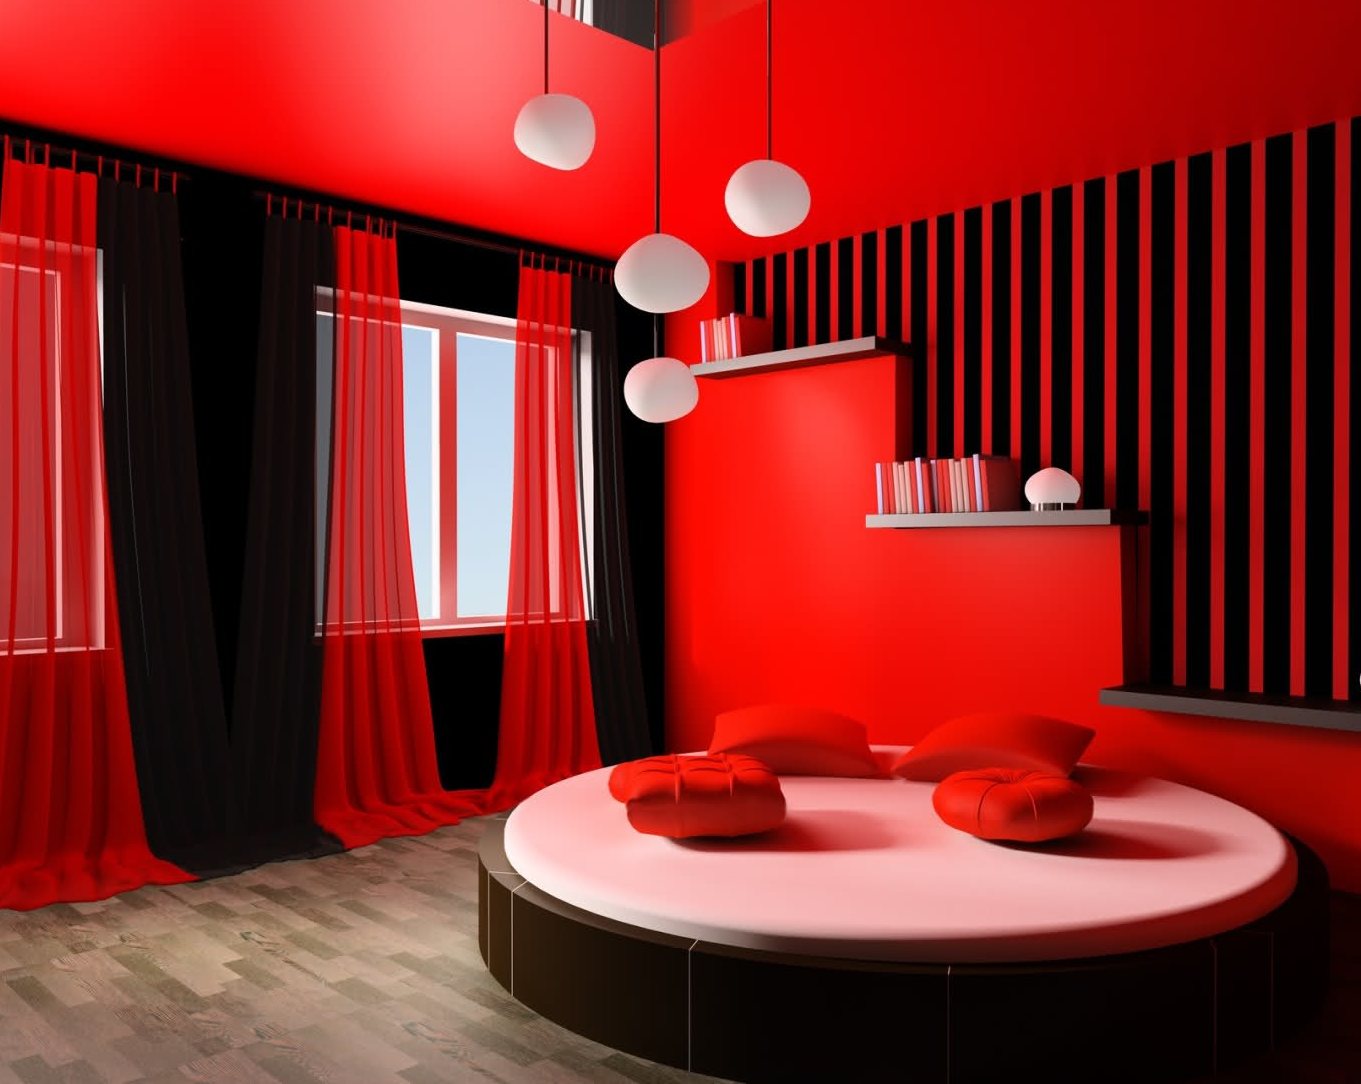 Комната В Красном Цвете Дизайн Фото